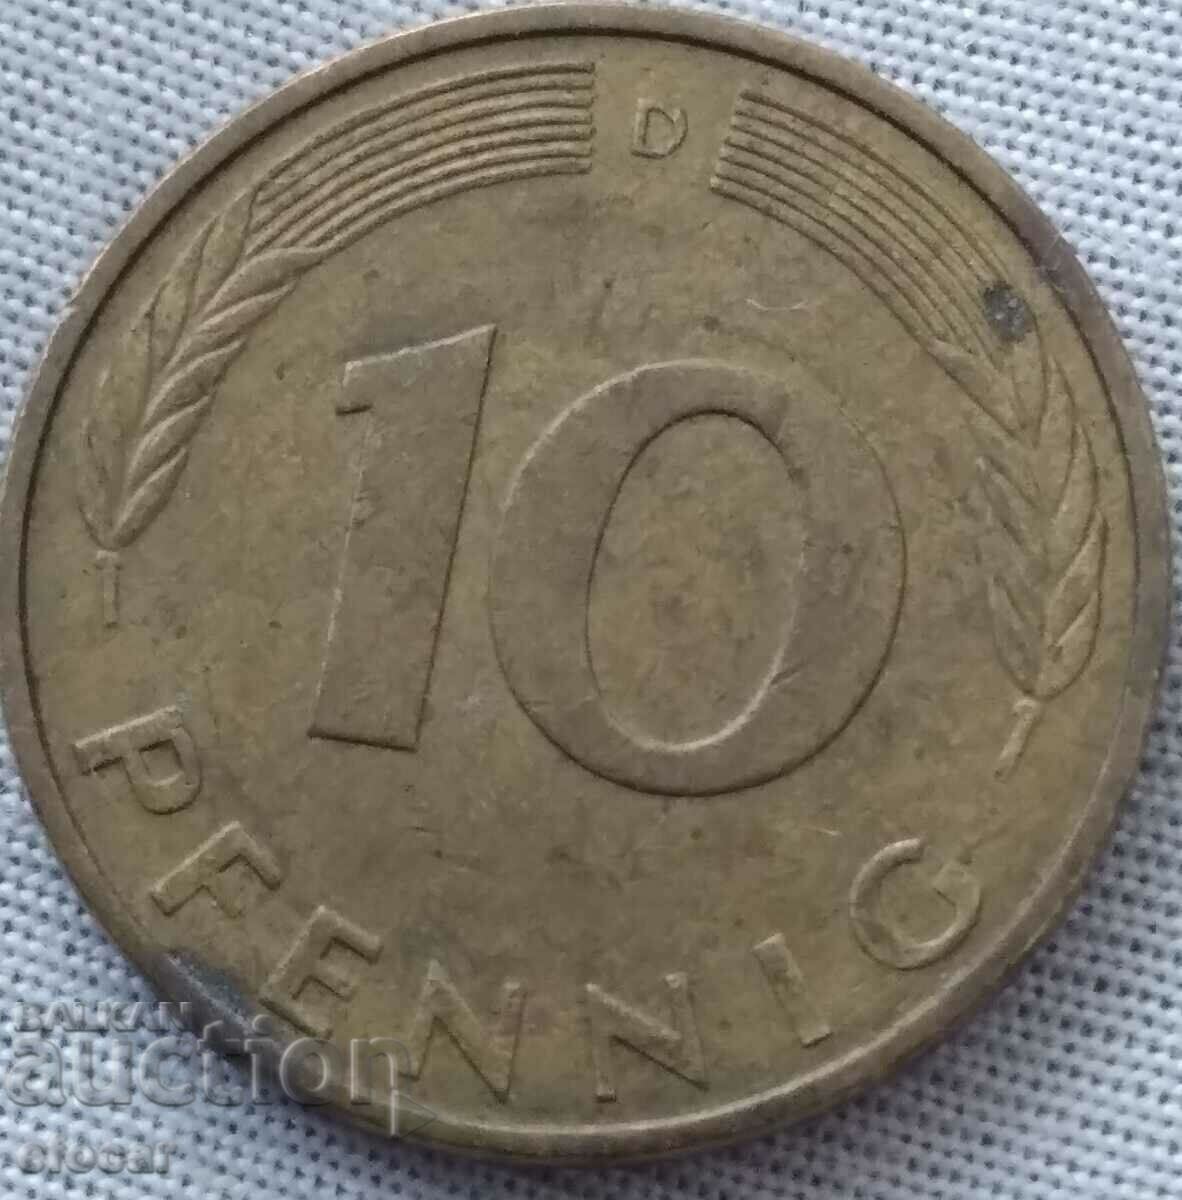 10 pfennig Germany letter D